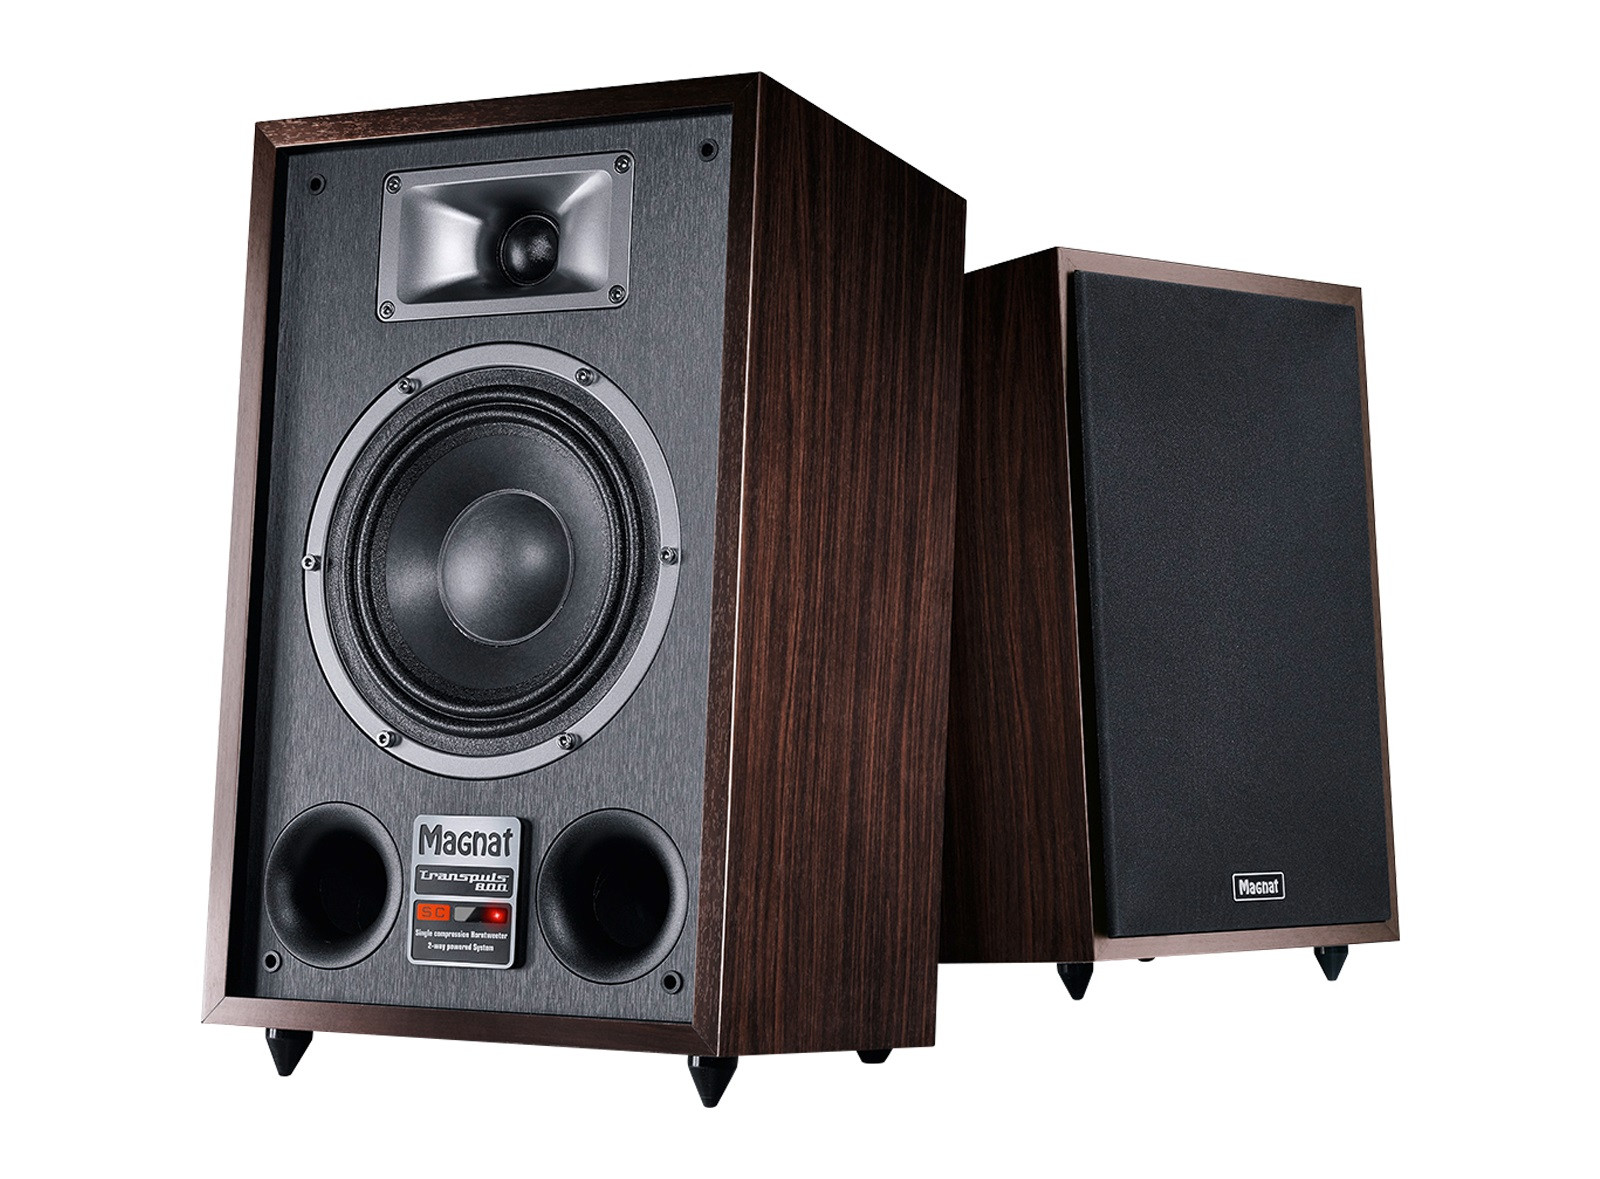 Magnat Transpuls-800A active speakers